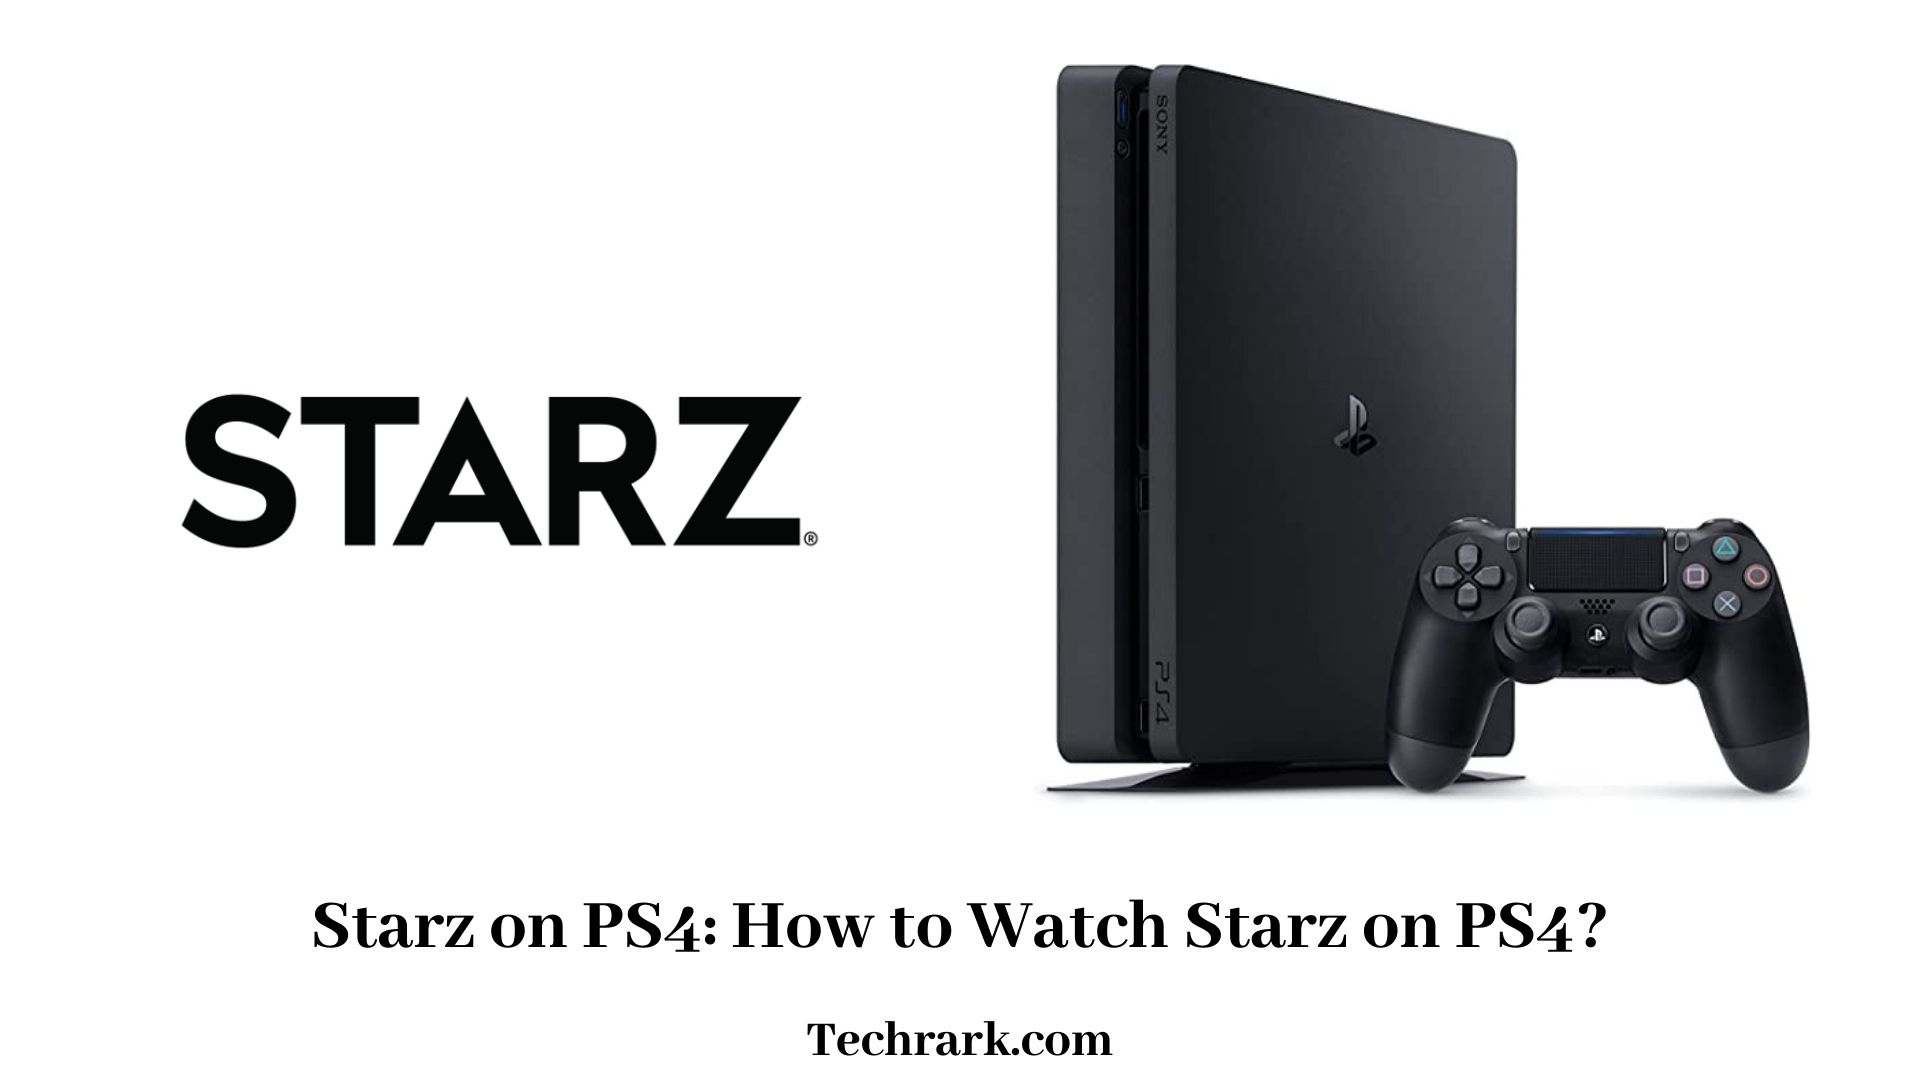 Starz on PS4